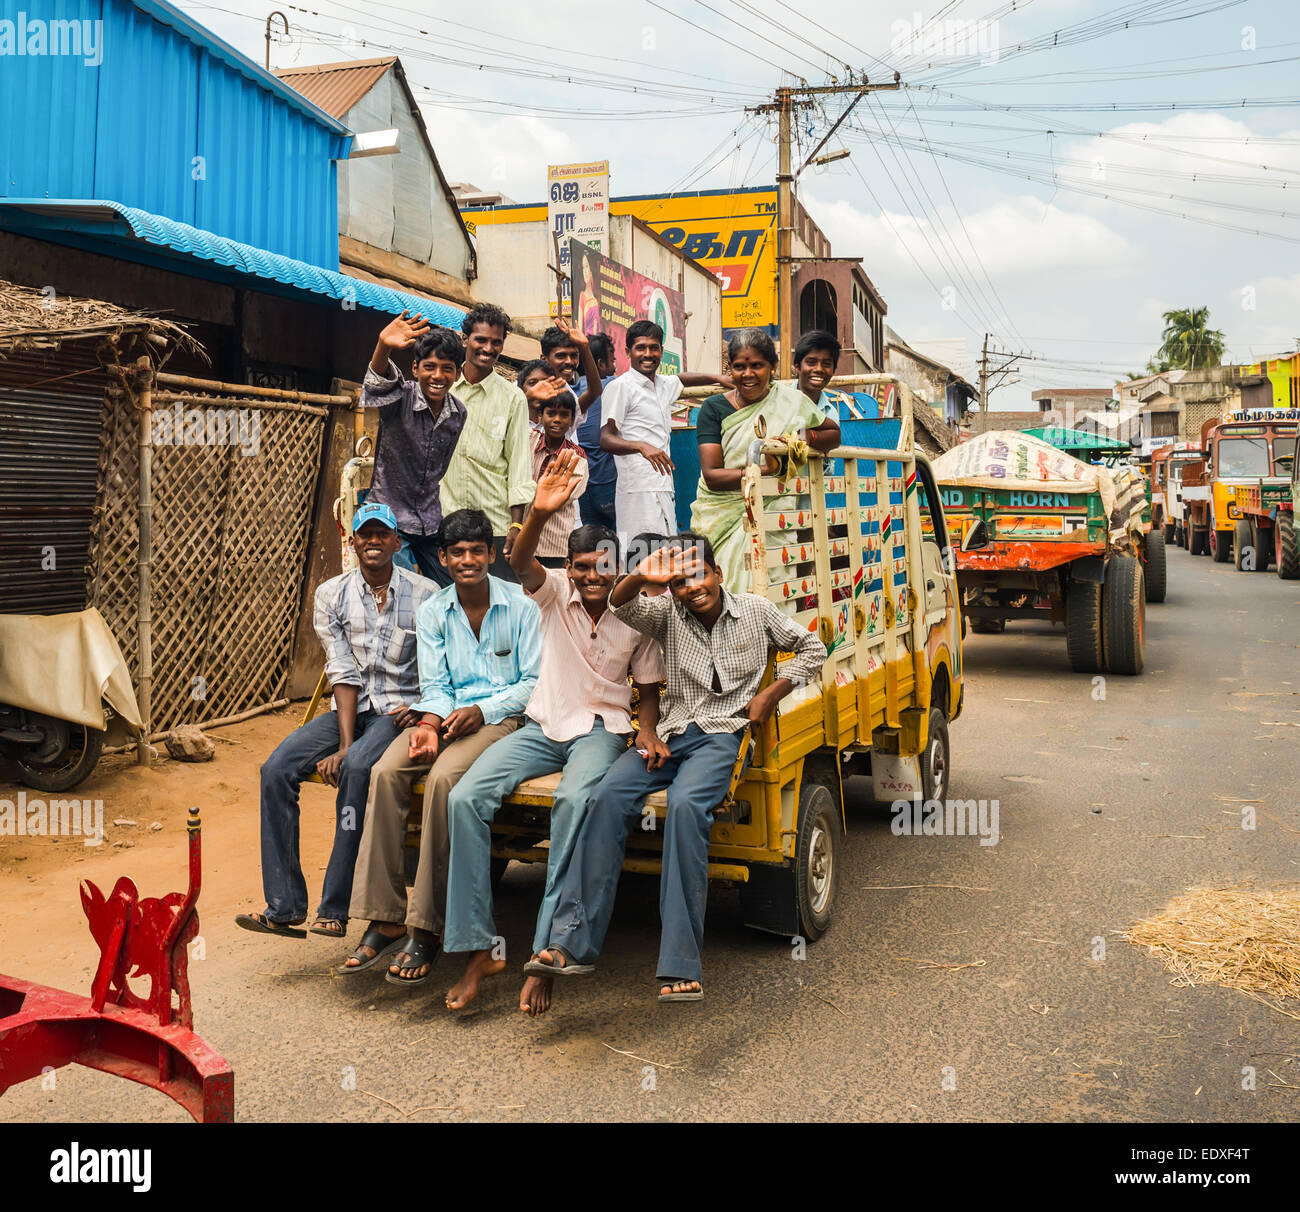 THANJAVOUR, India - 13 febbraio: Un uomini non identificati e la donna in sella a un carrello su una strada rurale nel traffico. India, nello Stato del Tamil Nadu, Foto Stock